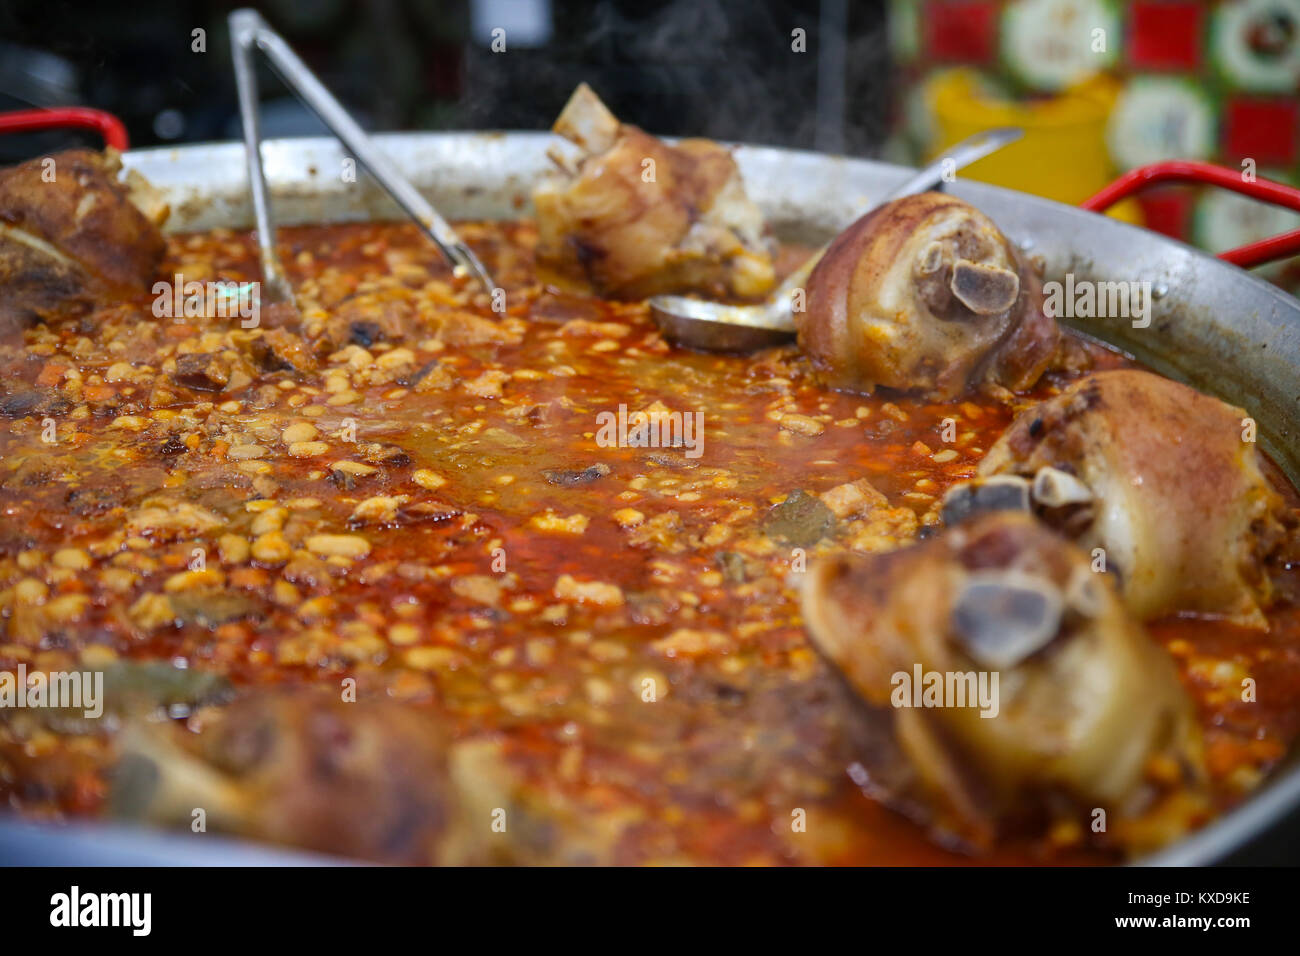 Zuppa di fagioli con affumicati (maiale) garretti presso il Mercato di Natale in Timisoara, Romania Foto Stock